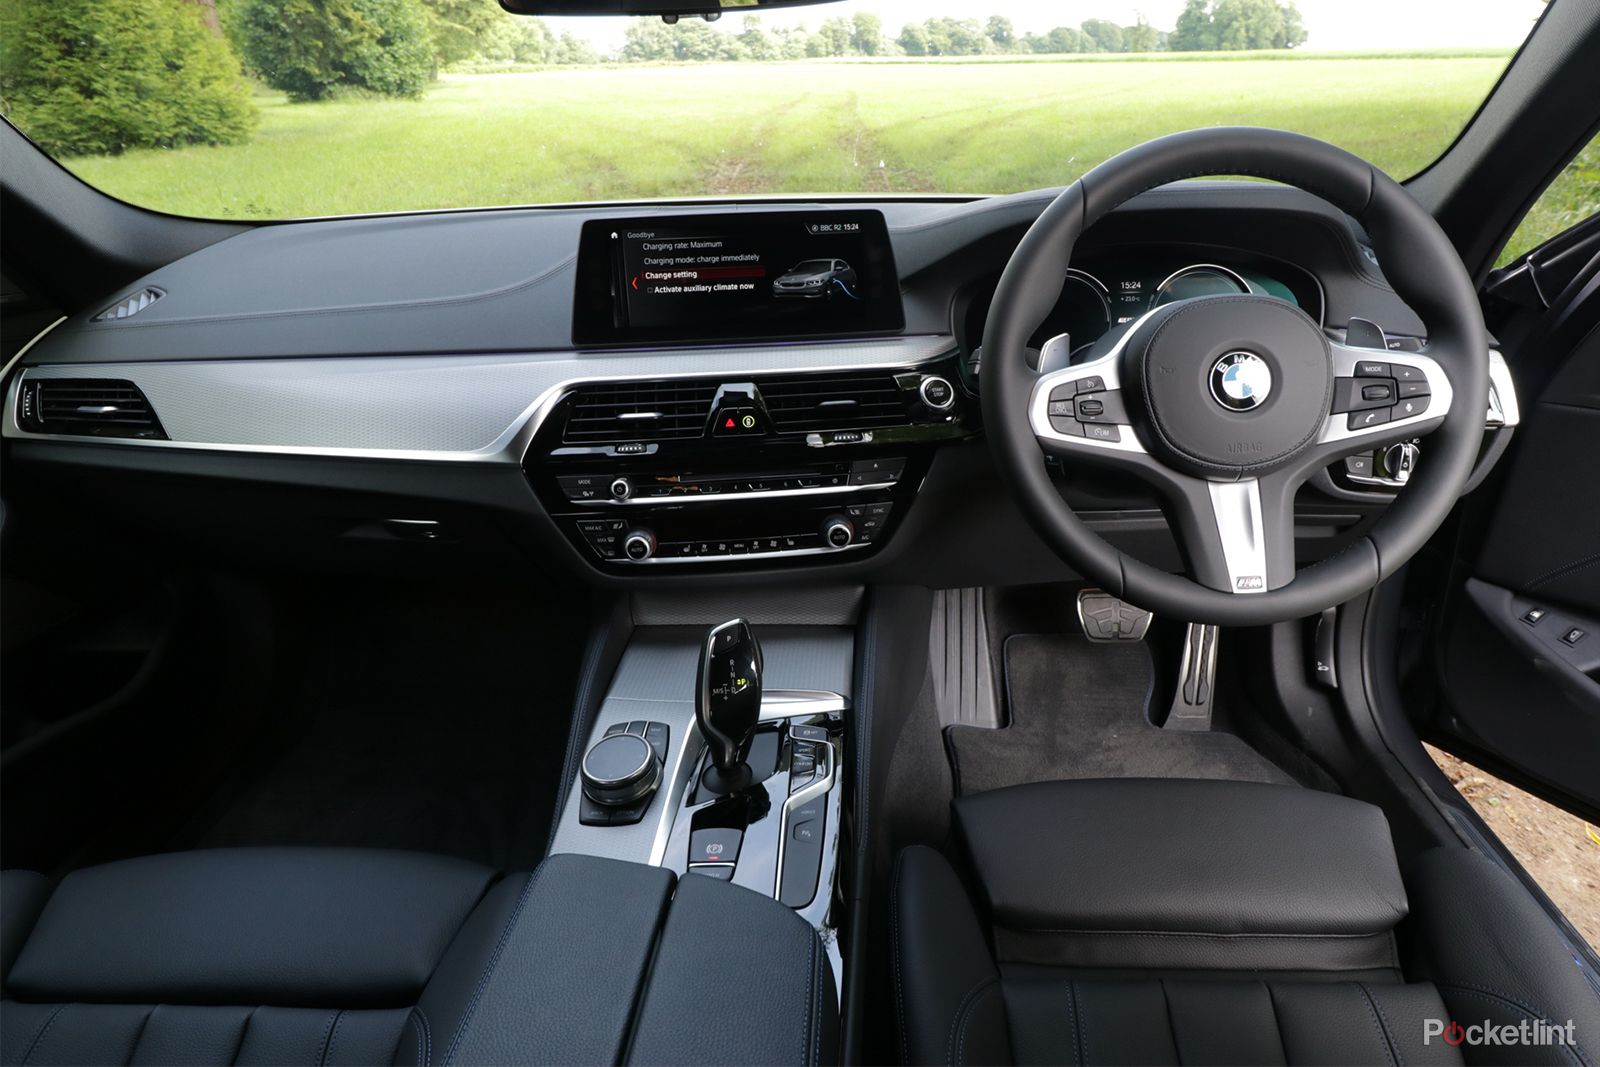 BMW 530e electric hybrid interior image 1